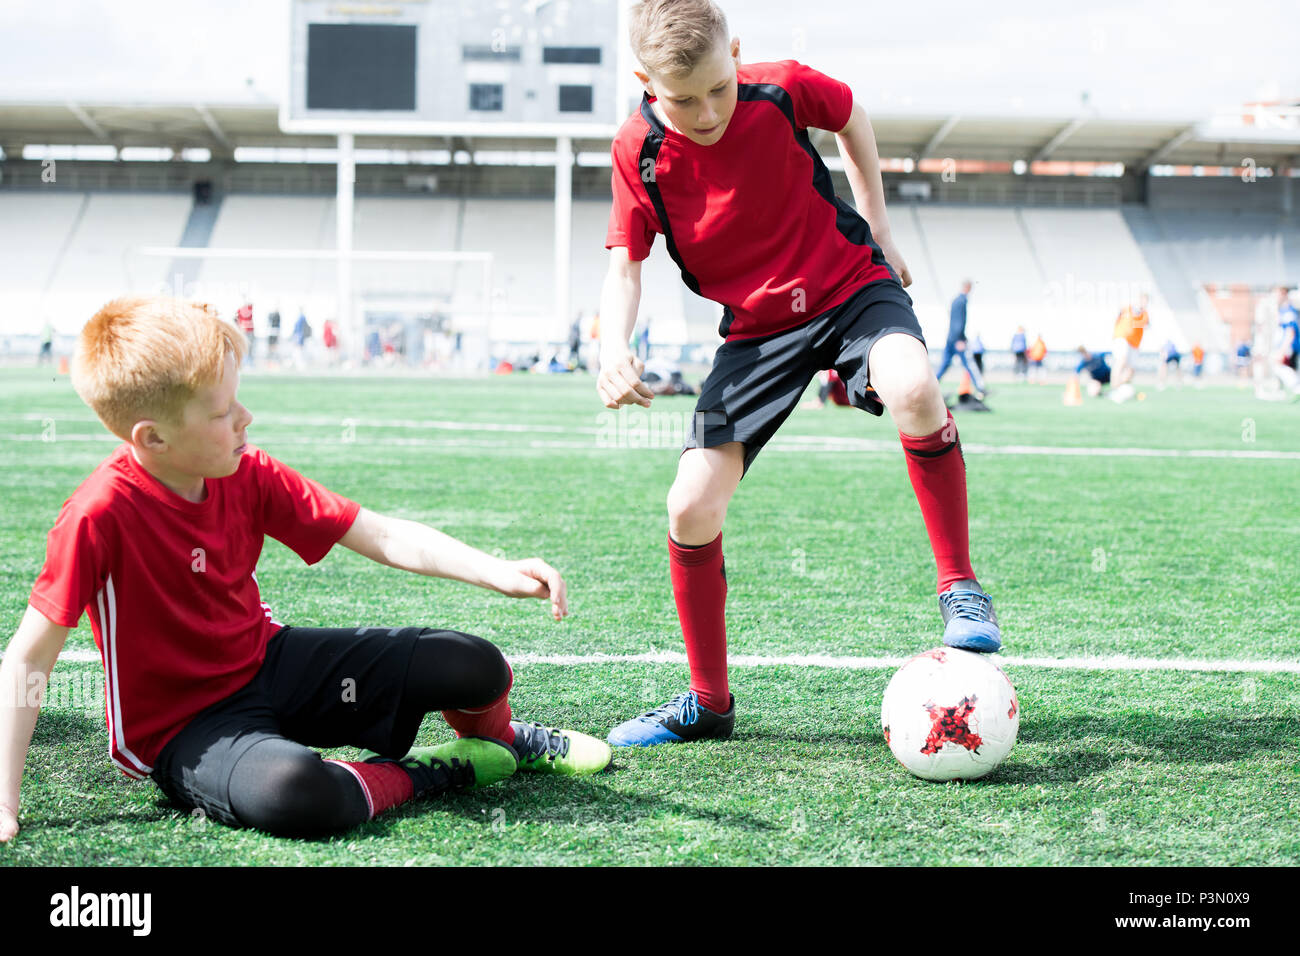 Children Playing Football in Stadium Stock Photo